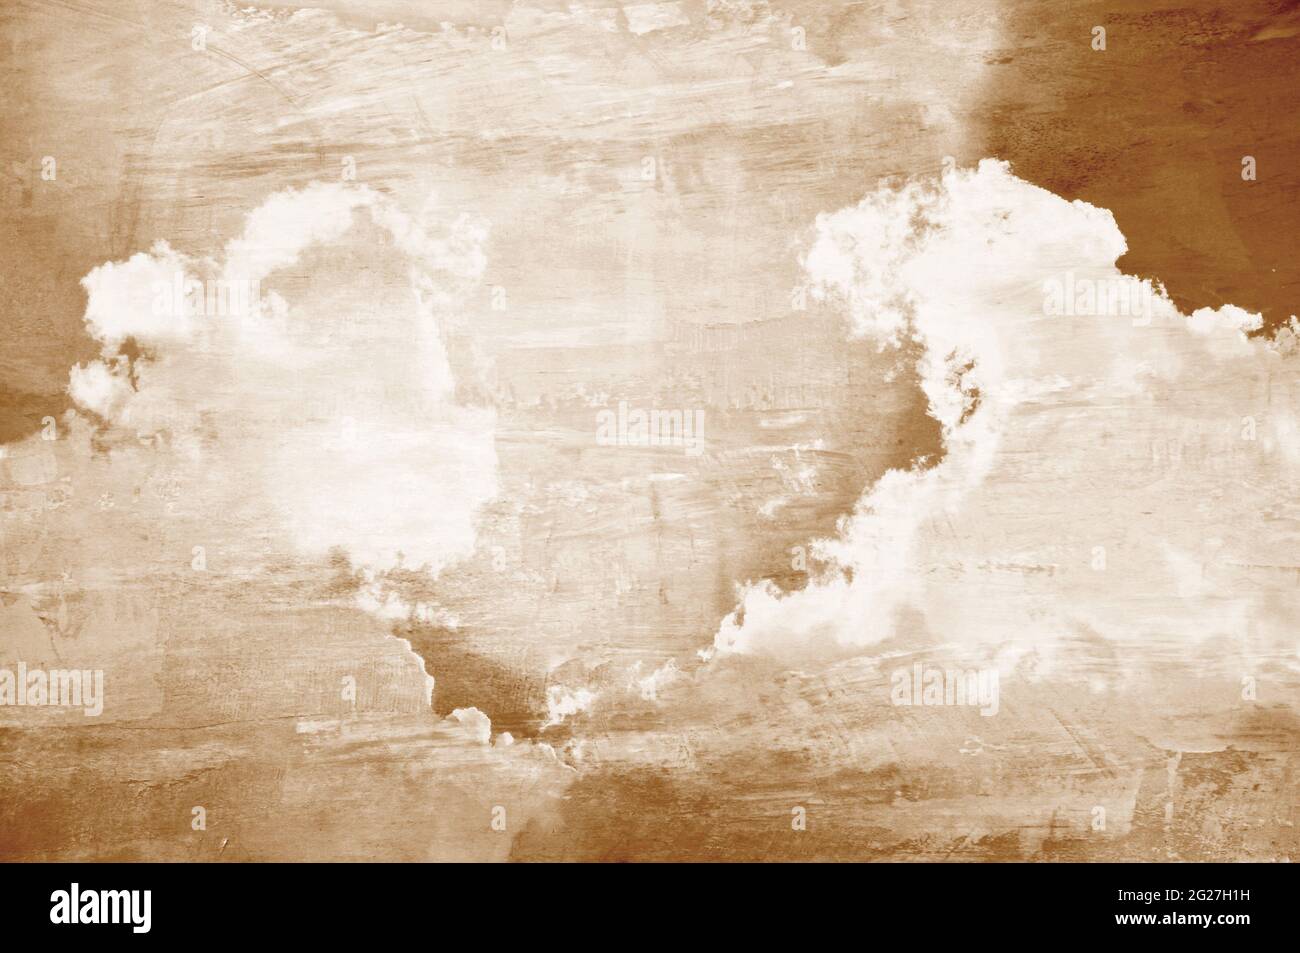 Retro-Stil Bild von Himmel und Wolken mit Sepia-Effekt Stockfoto